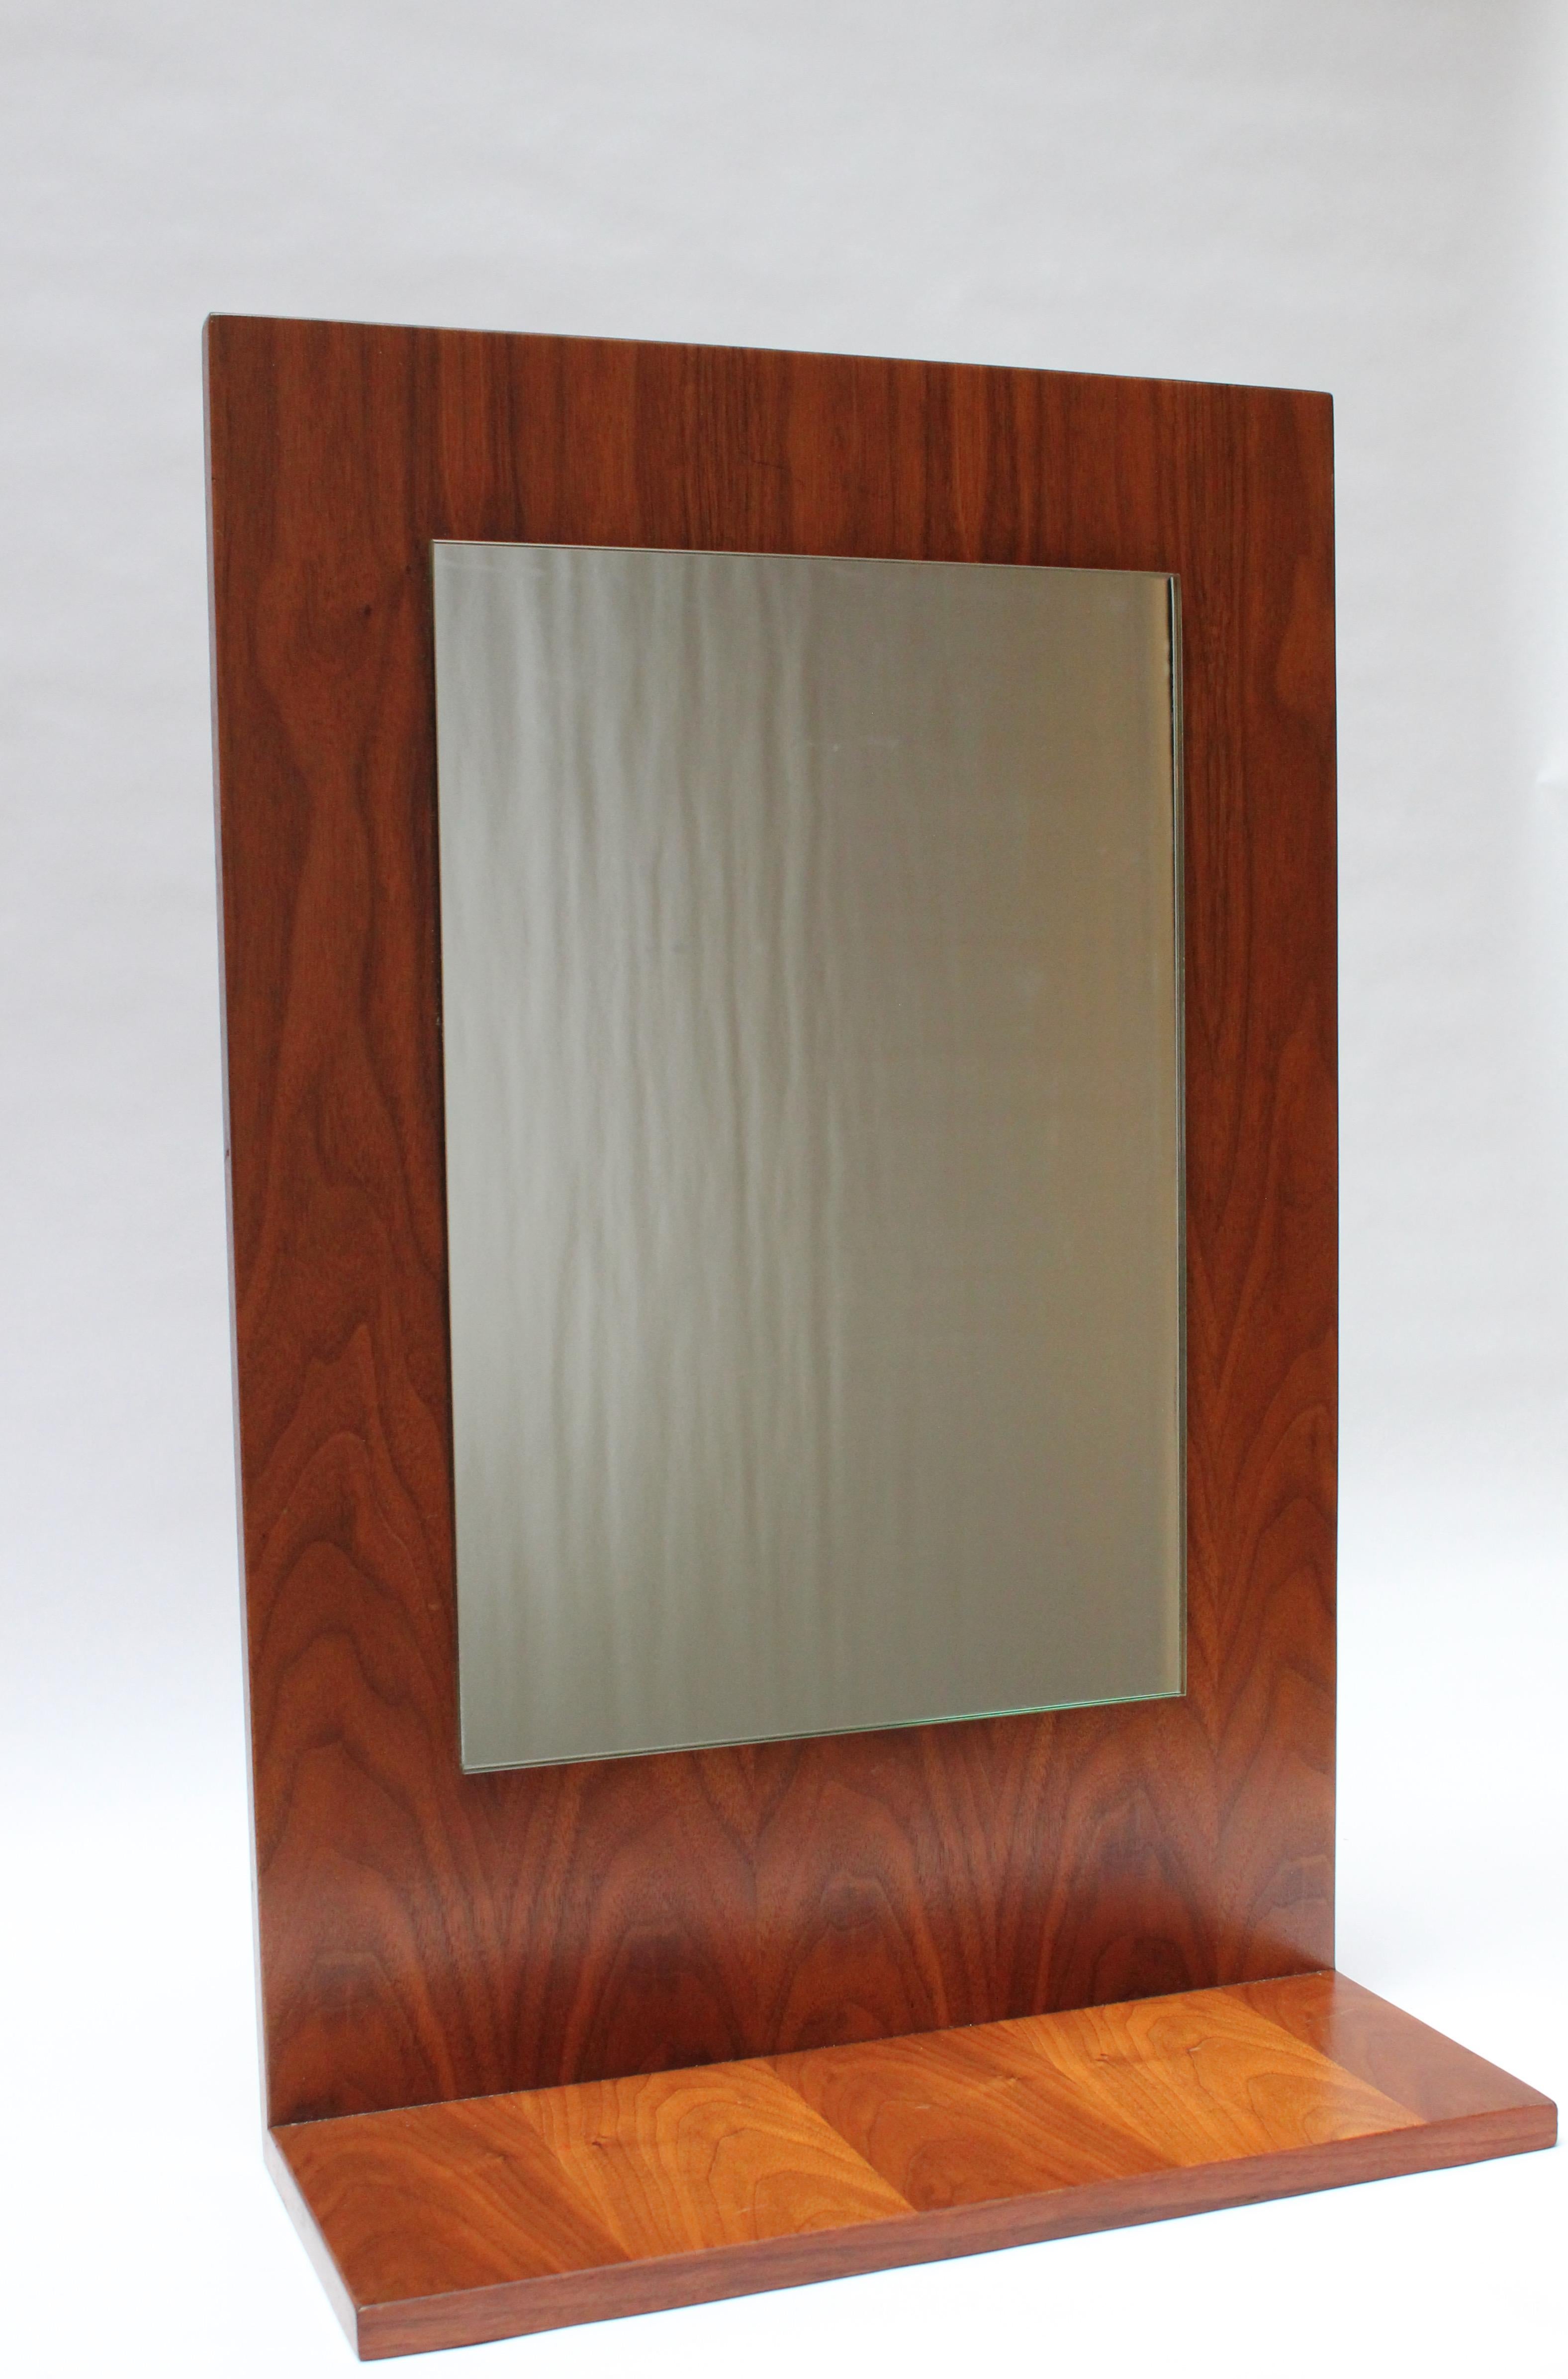 Dieser moderne Spiegel aus amerikanischem Nussbaumholz kann auf einer Ablagefläche stehen oder an der Wand befestigt werden (der Draht wurde bereits angebracht, so dass der Spiegel hängefertig ist). Die Rückseite ist unbearbeitet, und das Stück ist